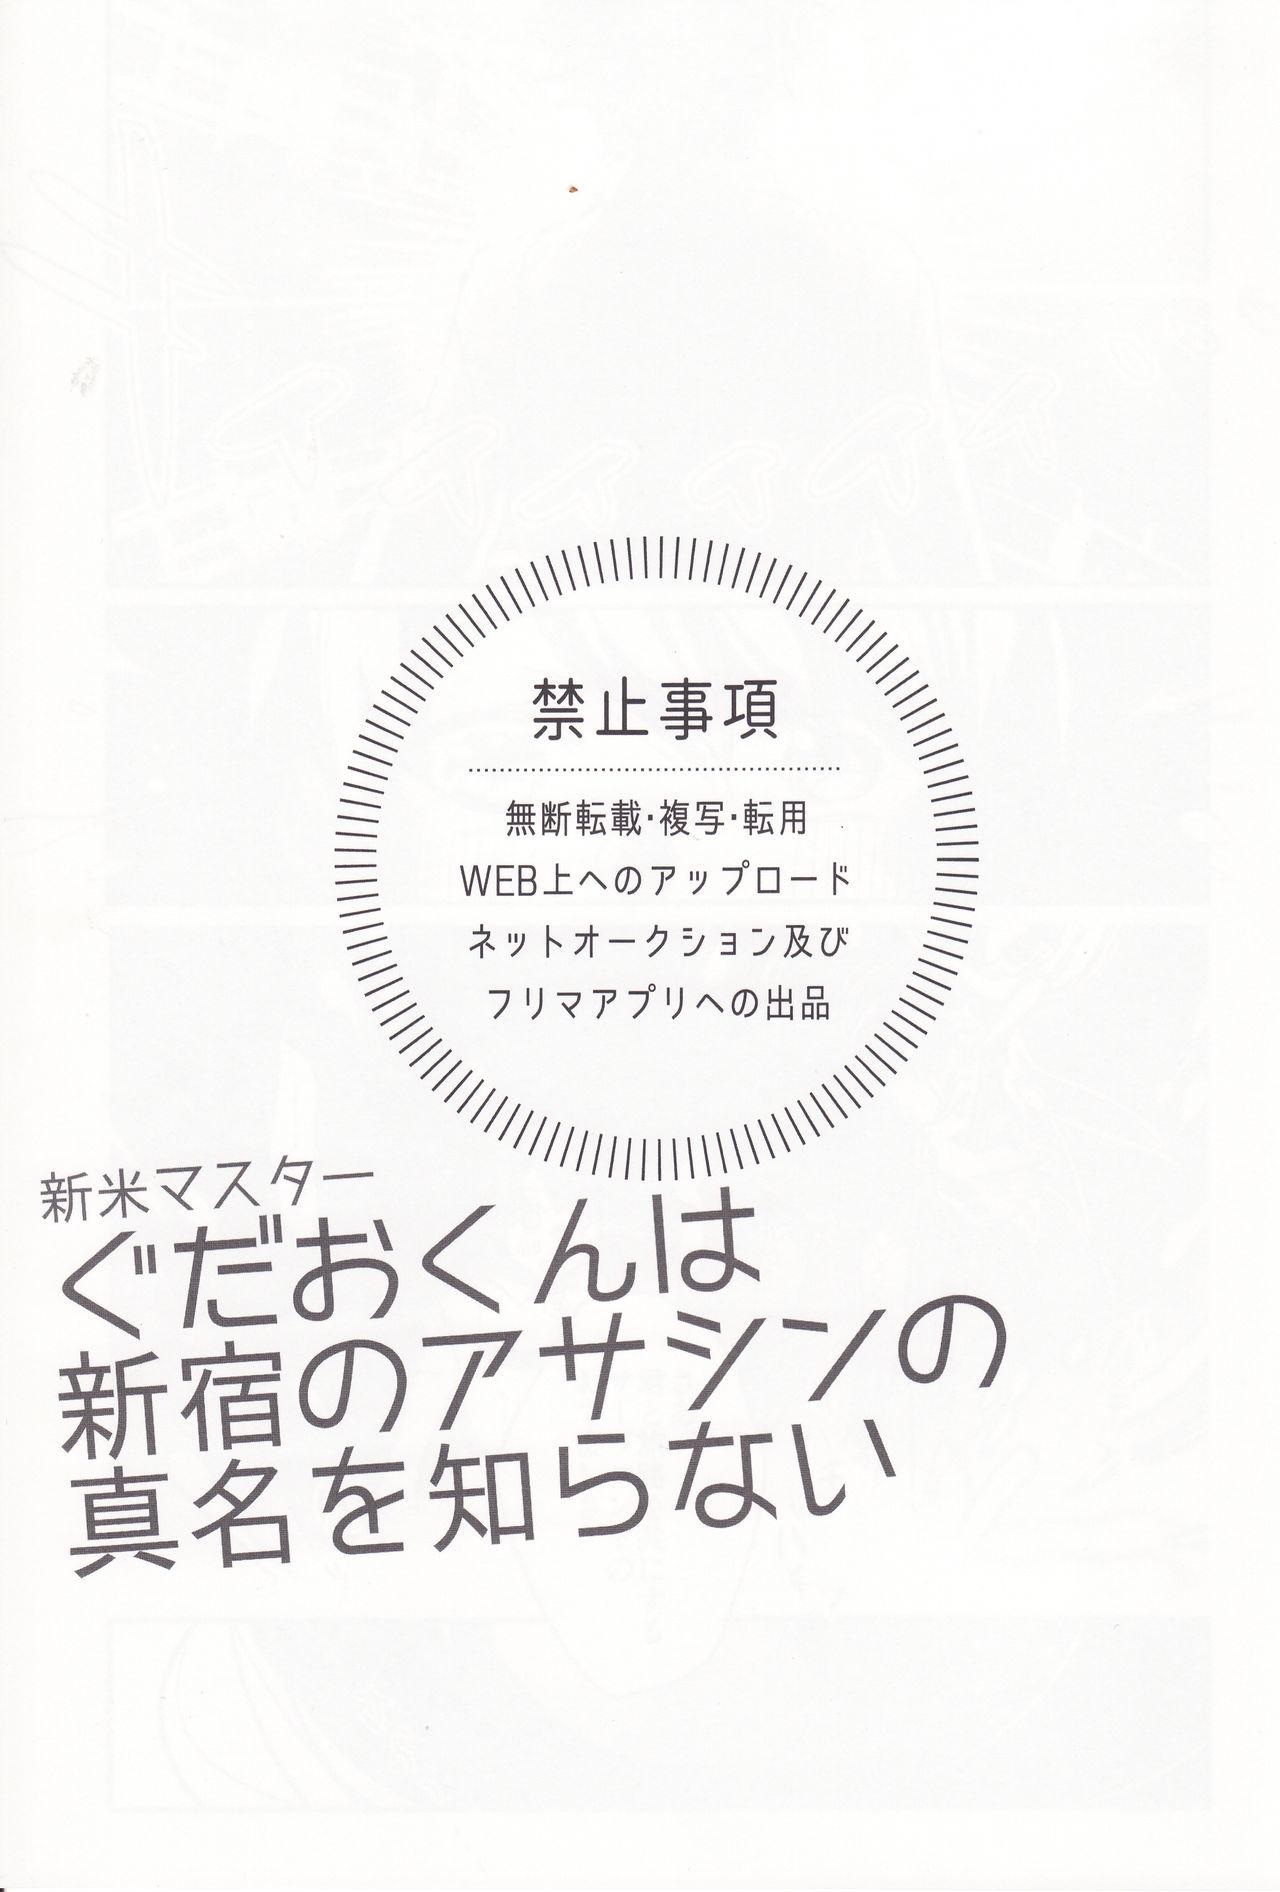 Moneytalks Shinmai Master Gudao-kun wa Shinjuku no Assassin no Shinmei o Shiranai - Fate grand order Hot Wife - Page 2